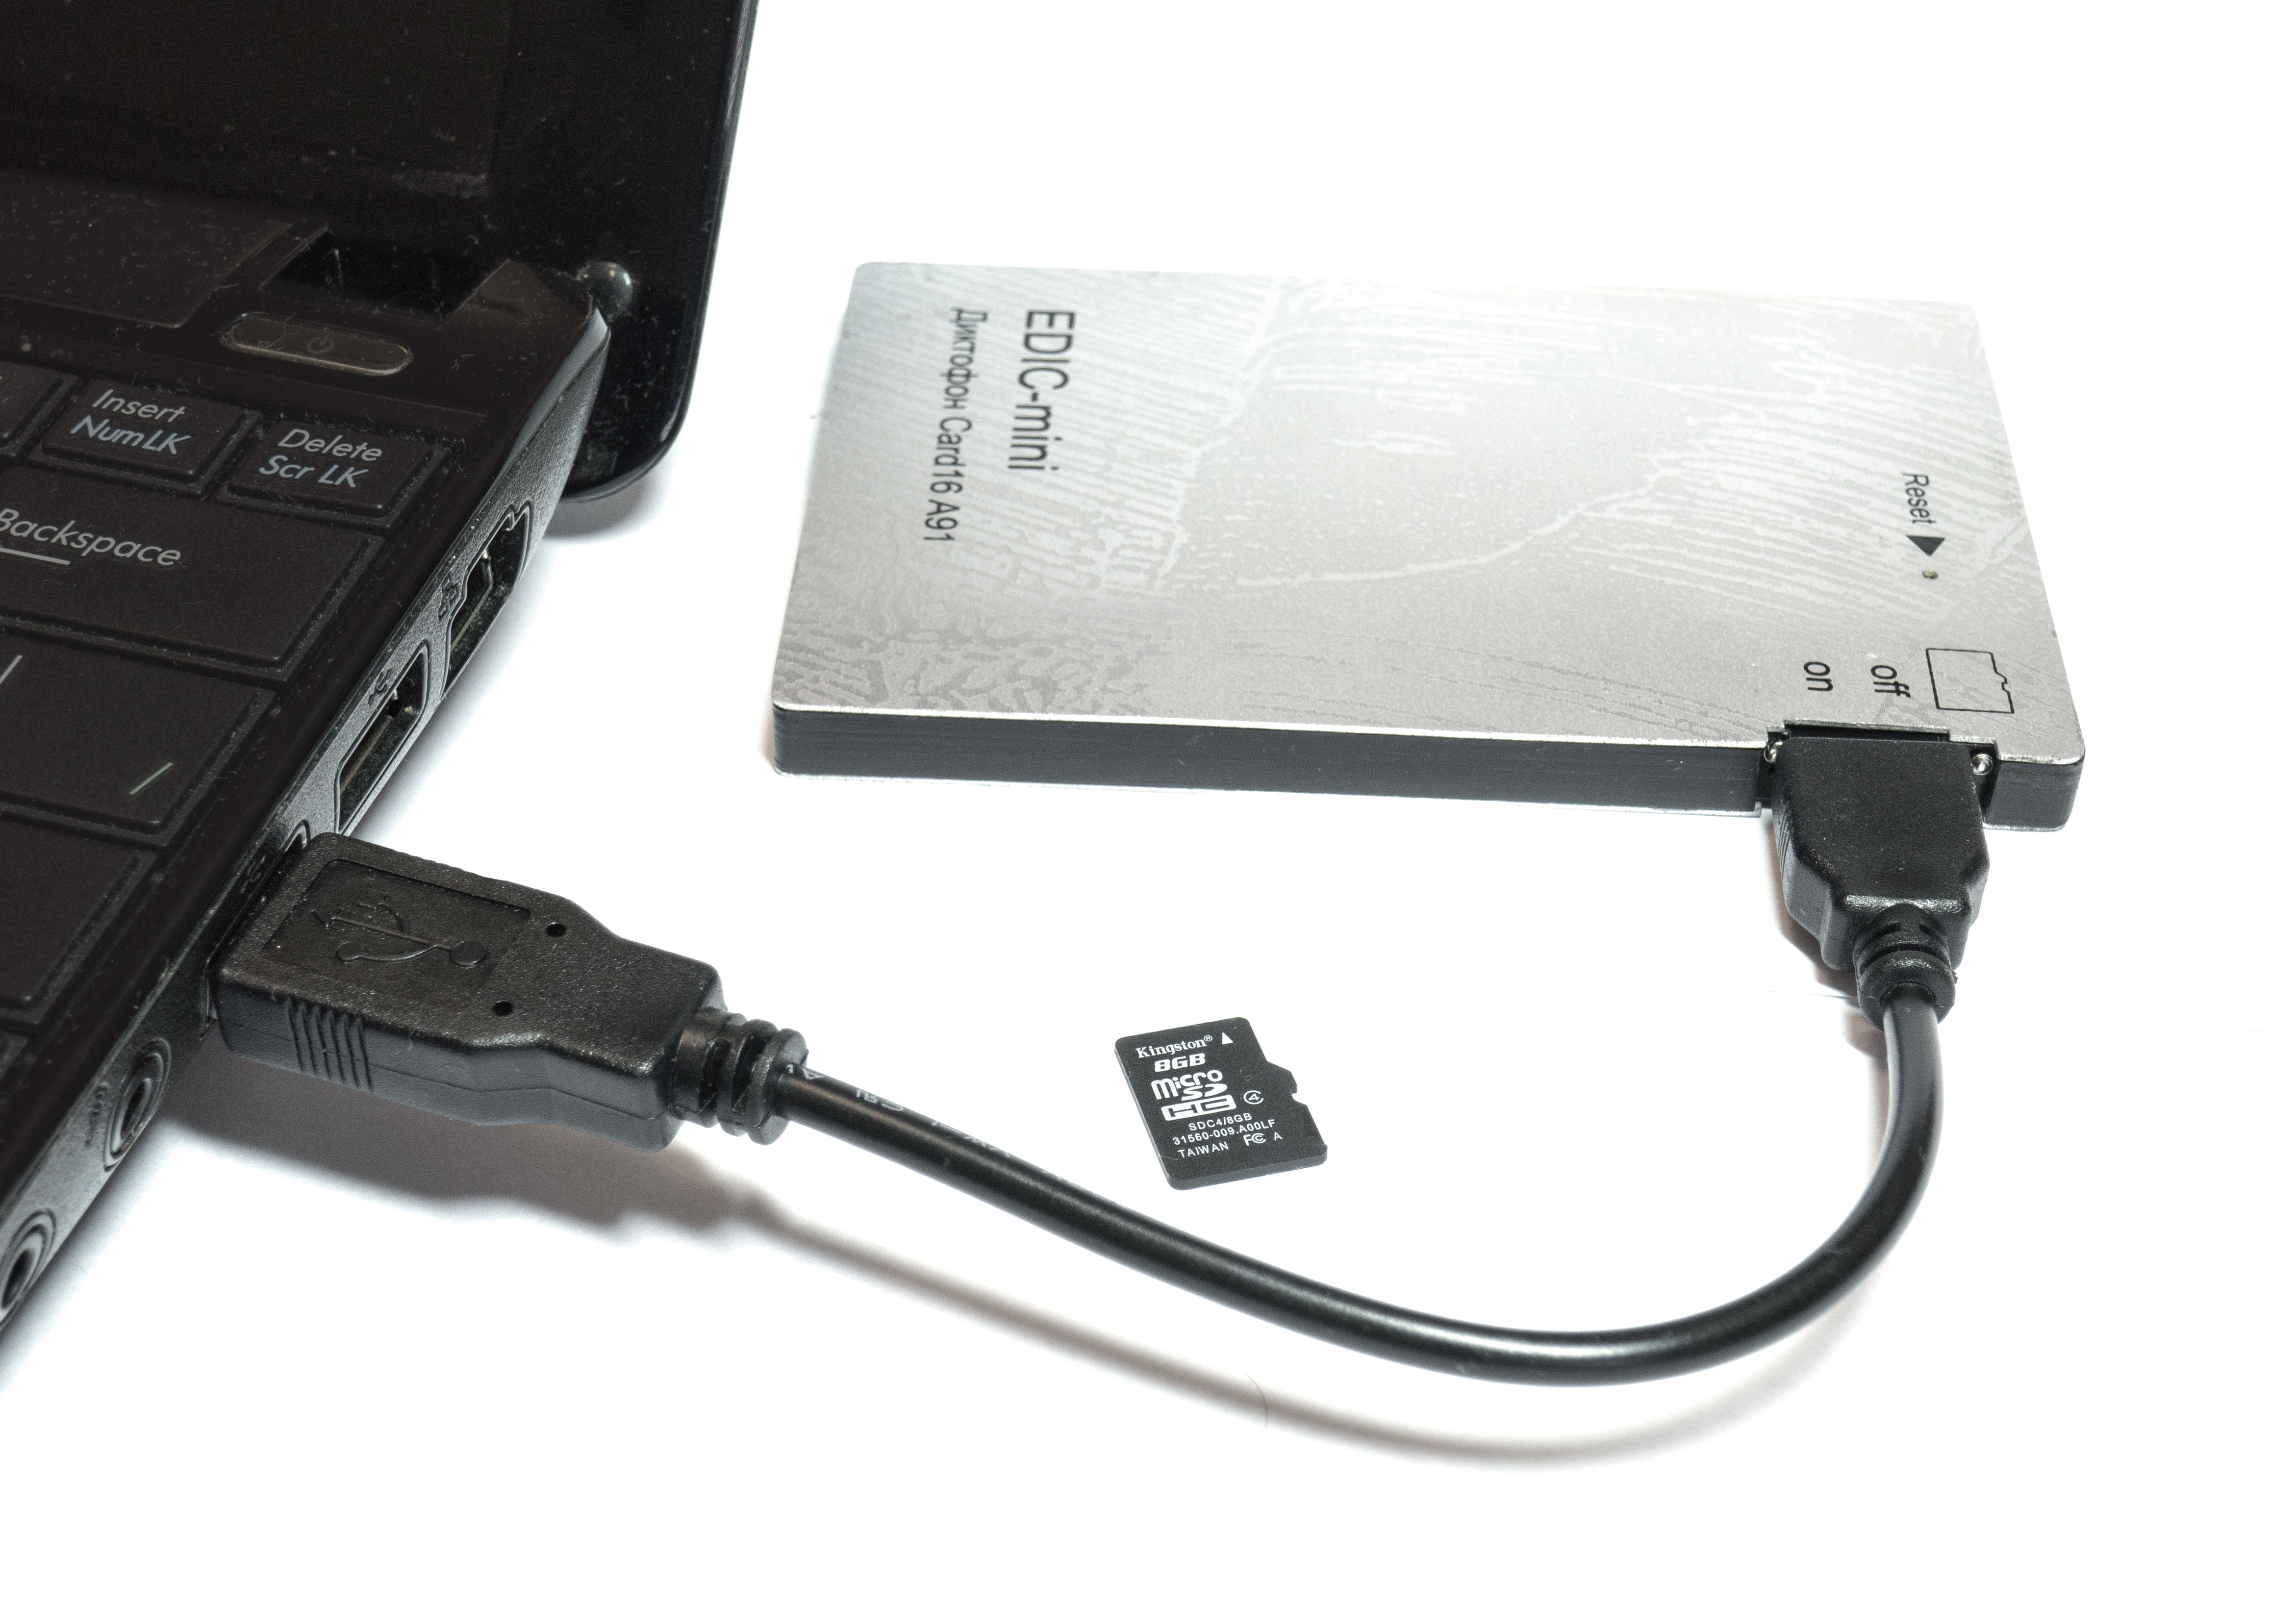 Все Телесистемы EM Card16 А91 (металл, размер 7*65*97мм, вес 72г, автономность до 1000ч, аккумулятор) видеонаблюдения в магазине Vidos Group